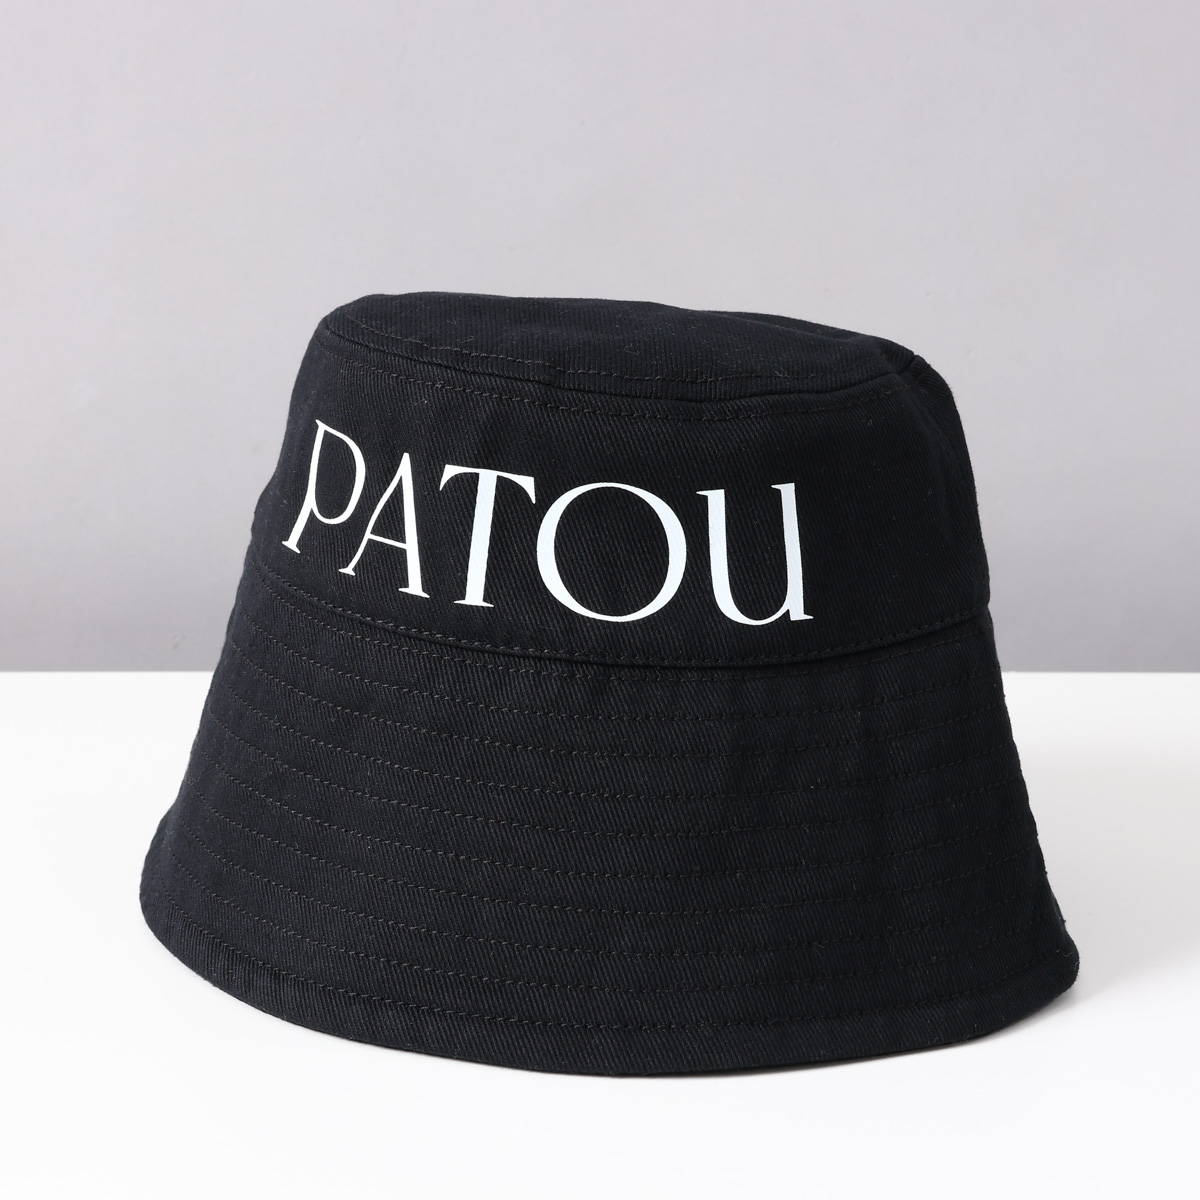 パトゥ PATOU バケットハット 帽子 ロゴ 刺繍 コットン AC027 HATS